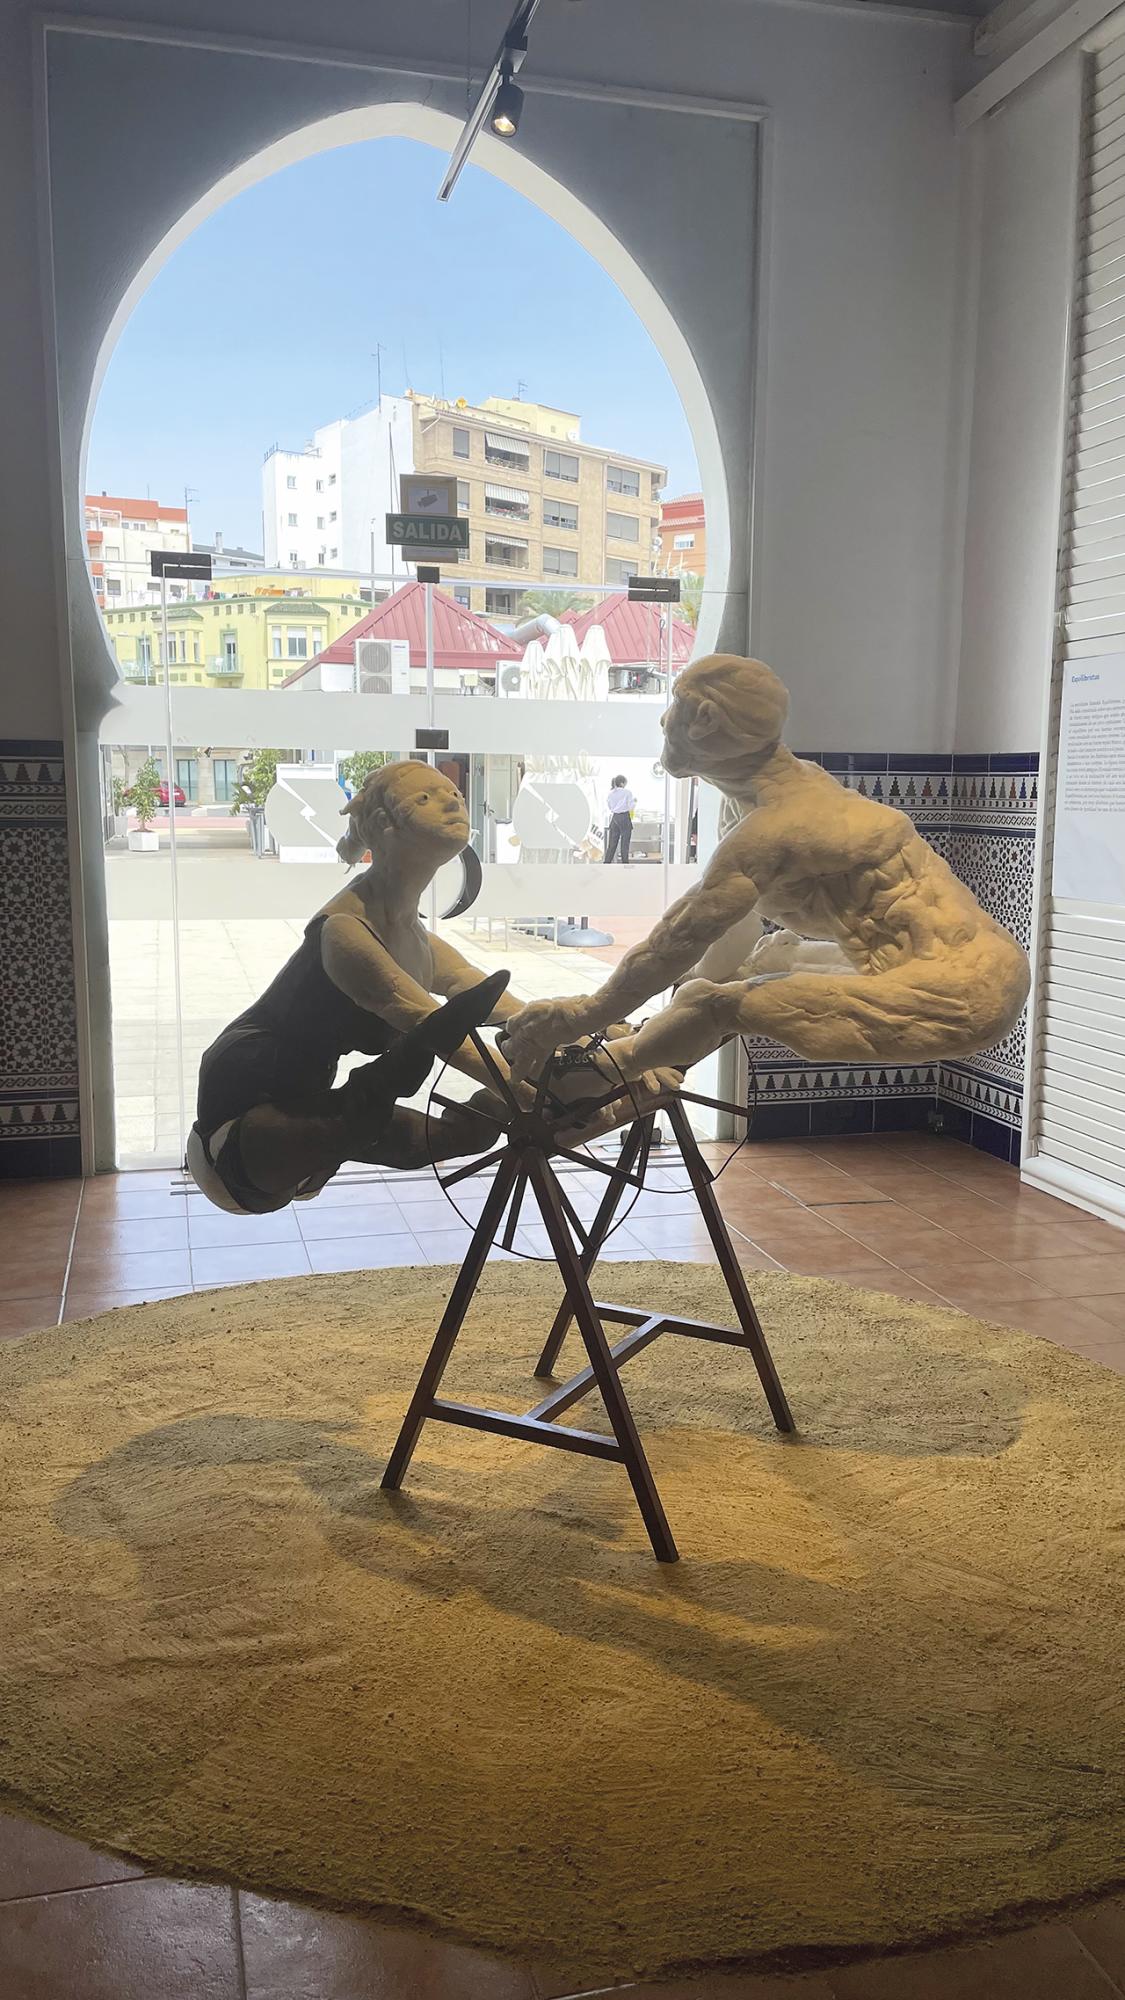 $!La exposición es una amplia colección de esculturas de Pepe Beas, Inma Coll, Maribel Domènech, Fanny Galera, Sebastià Miralles, Manuel Martí Moreno, Pilar Sala y Joan Valle.